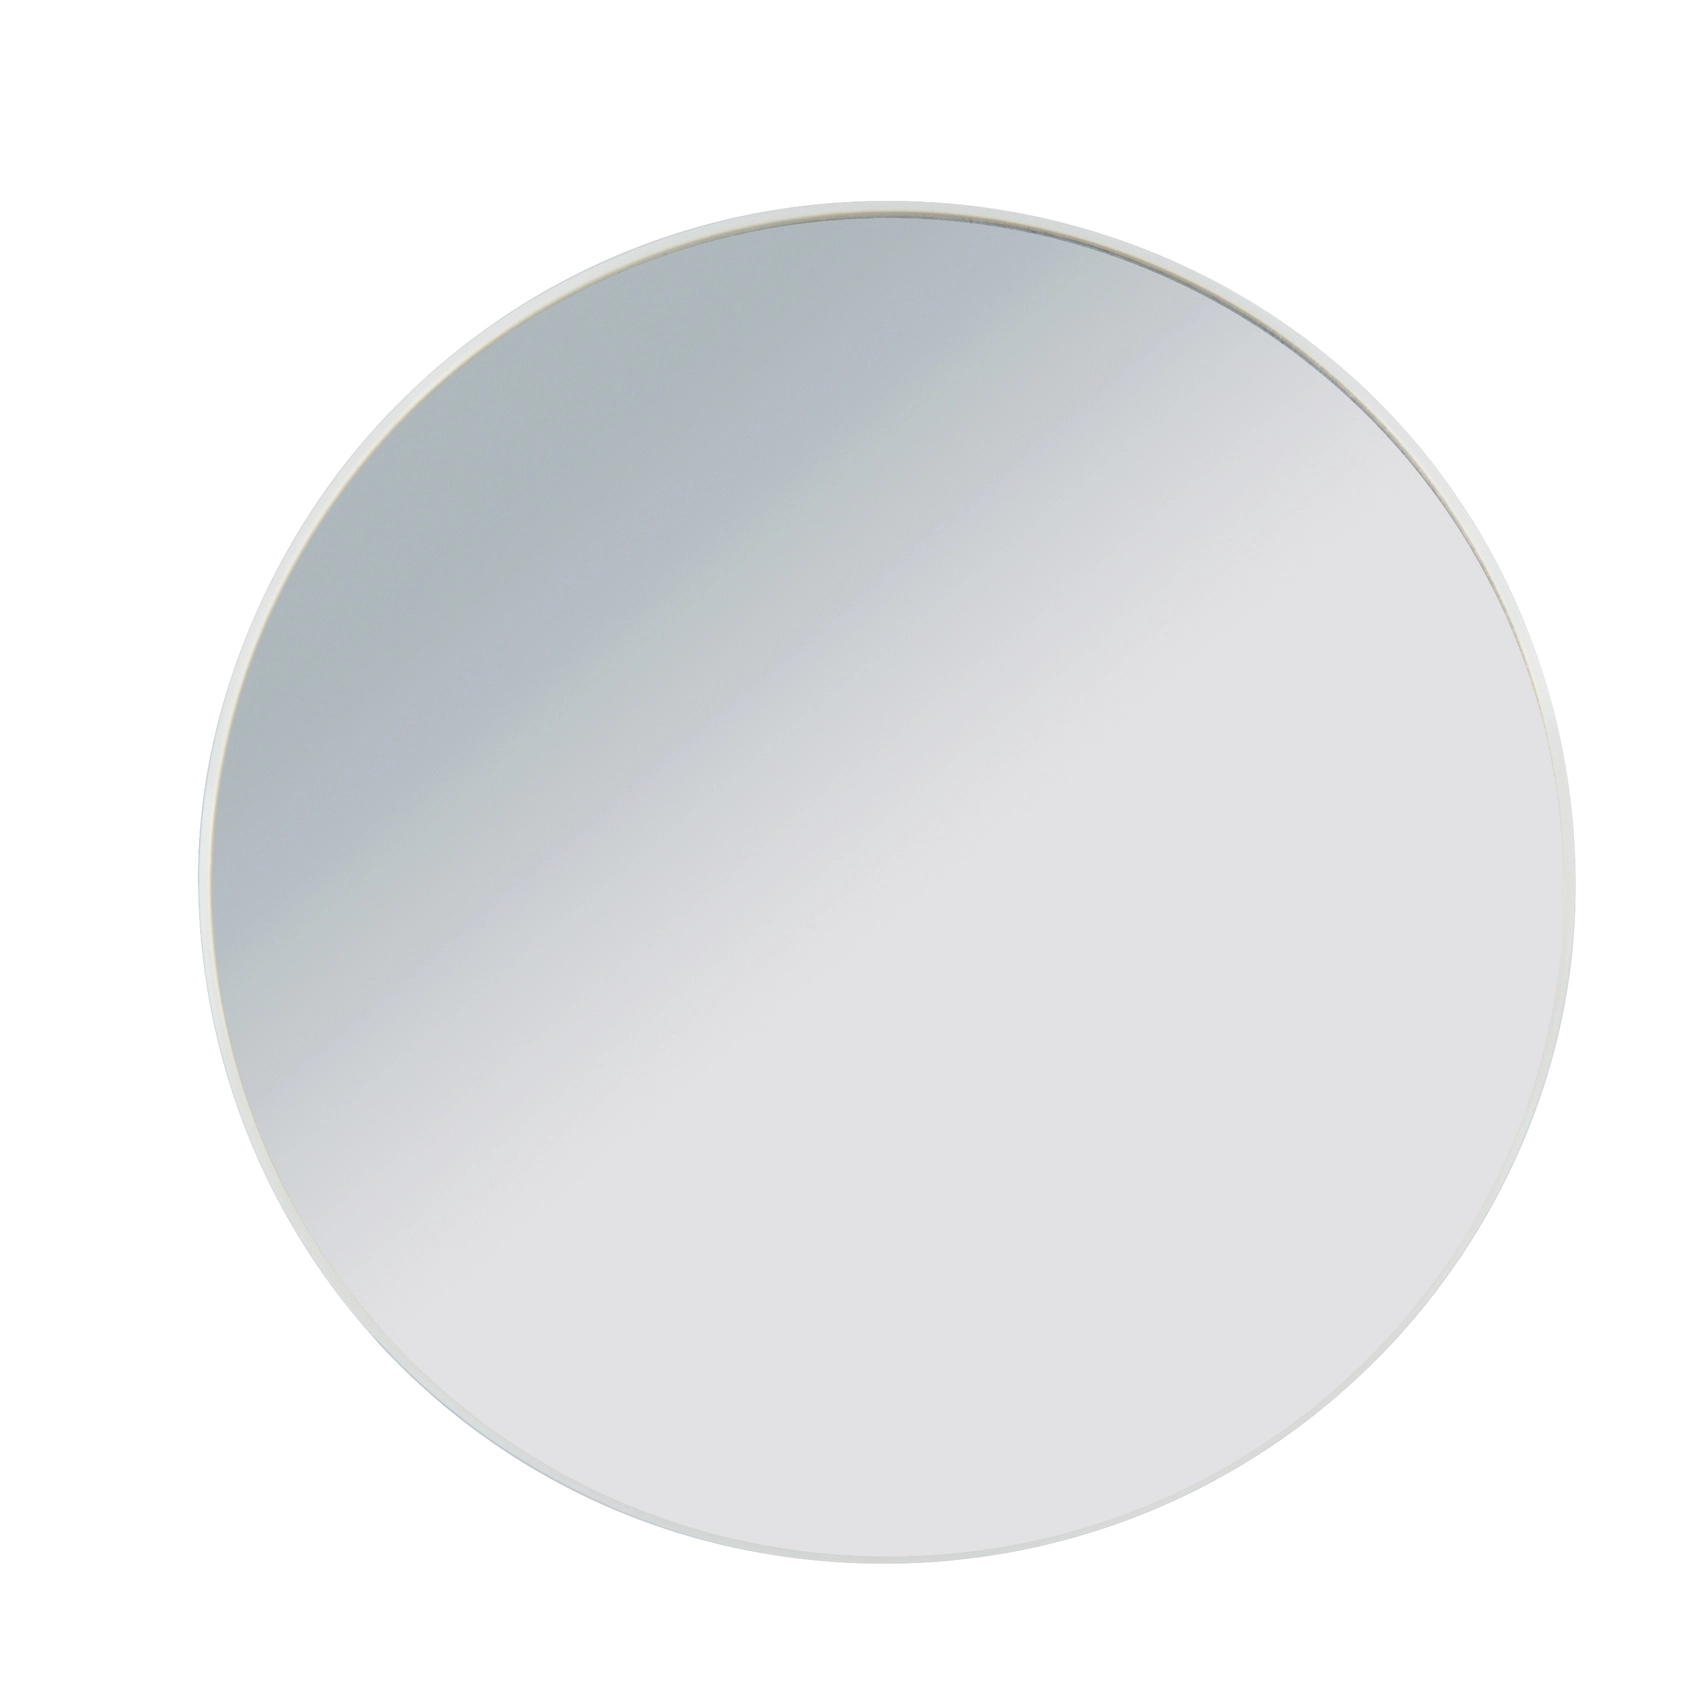 Wenko Vergrößerungs-Kosmetik-Wandspiegel 3-fach kaufen bei OBI